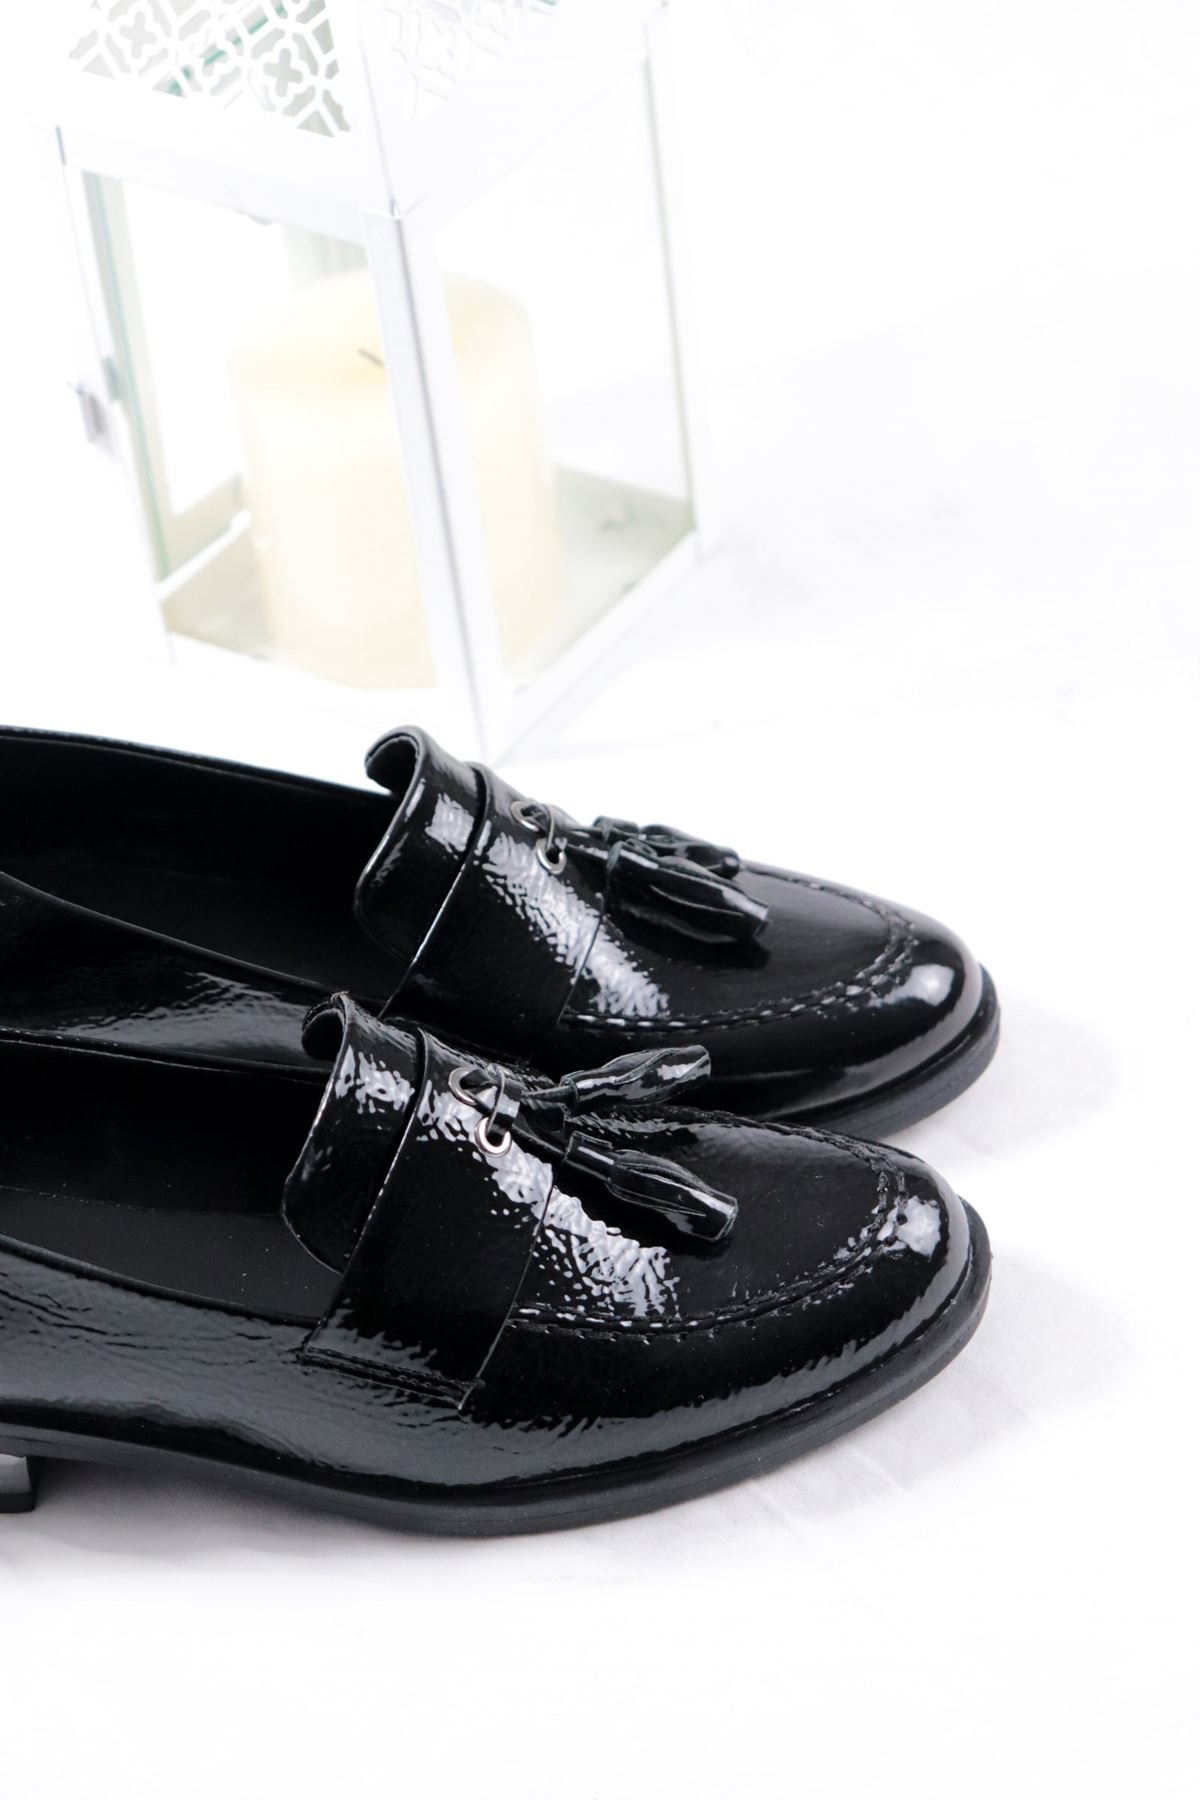 Trendayakkabı - Siyah Rugan Loafer Kadın Ayakkabı